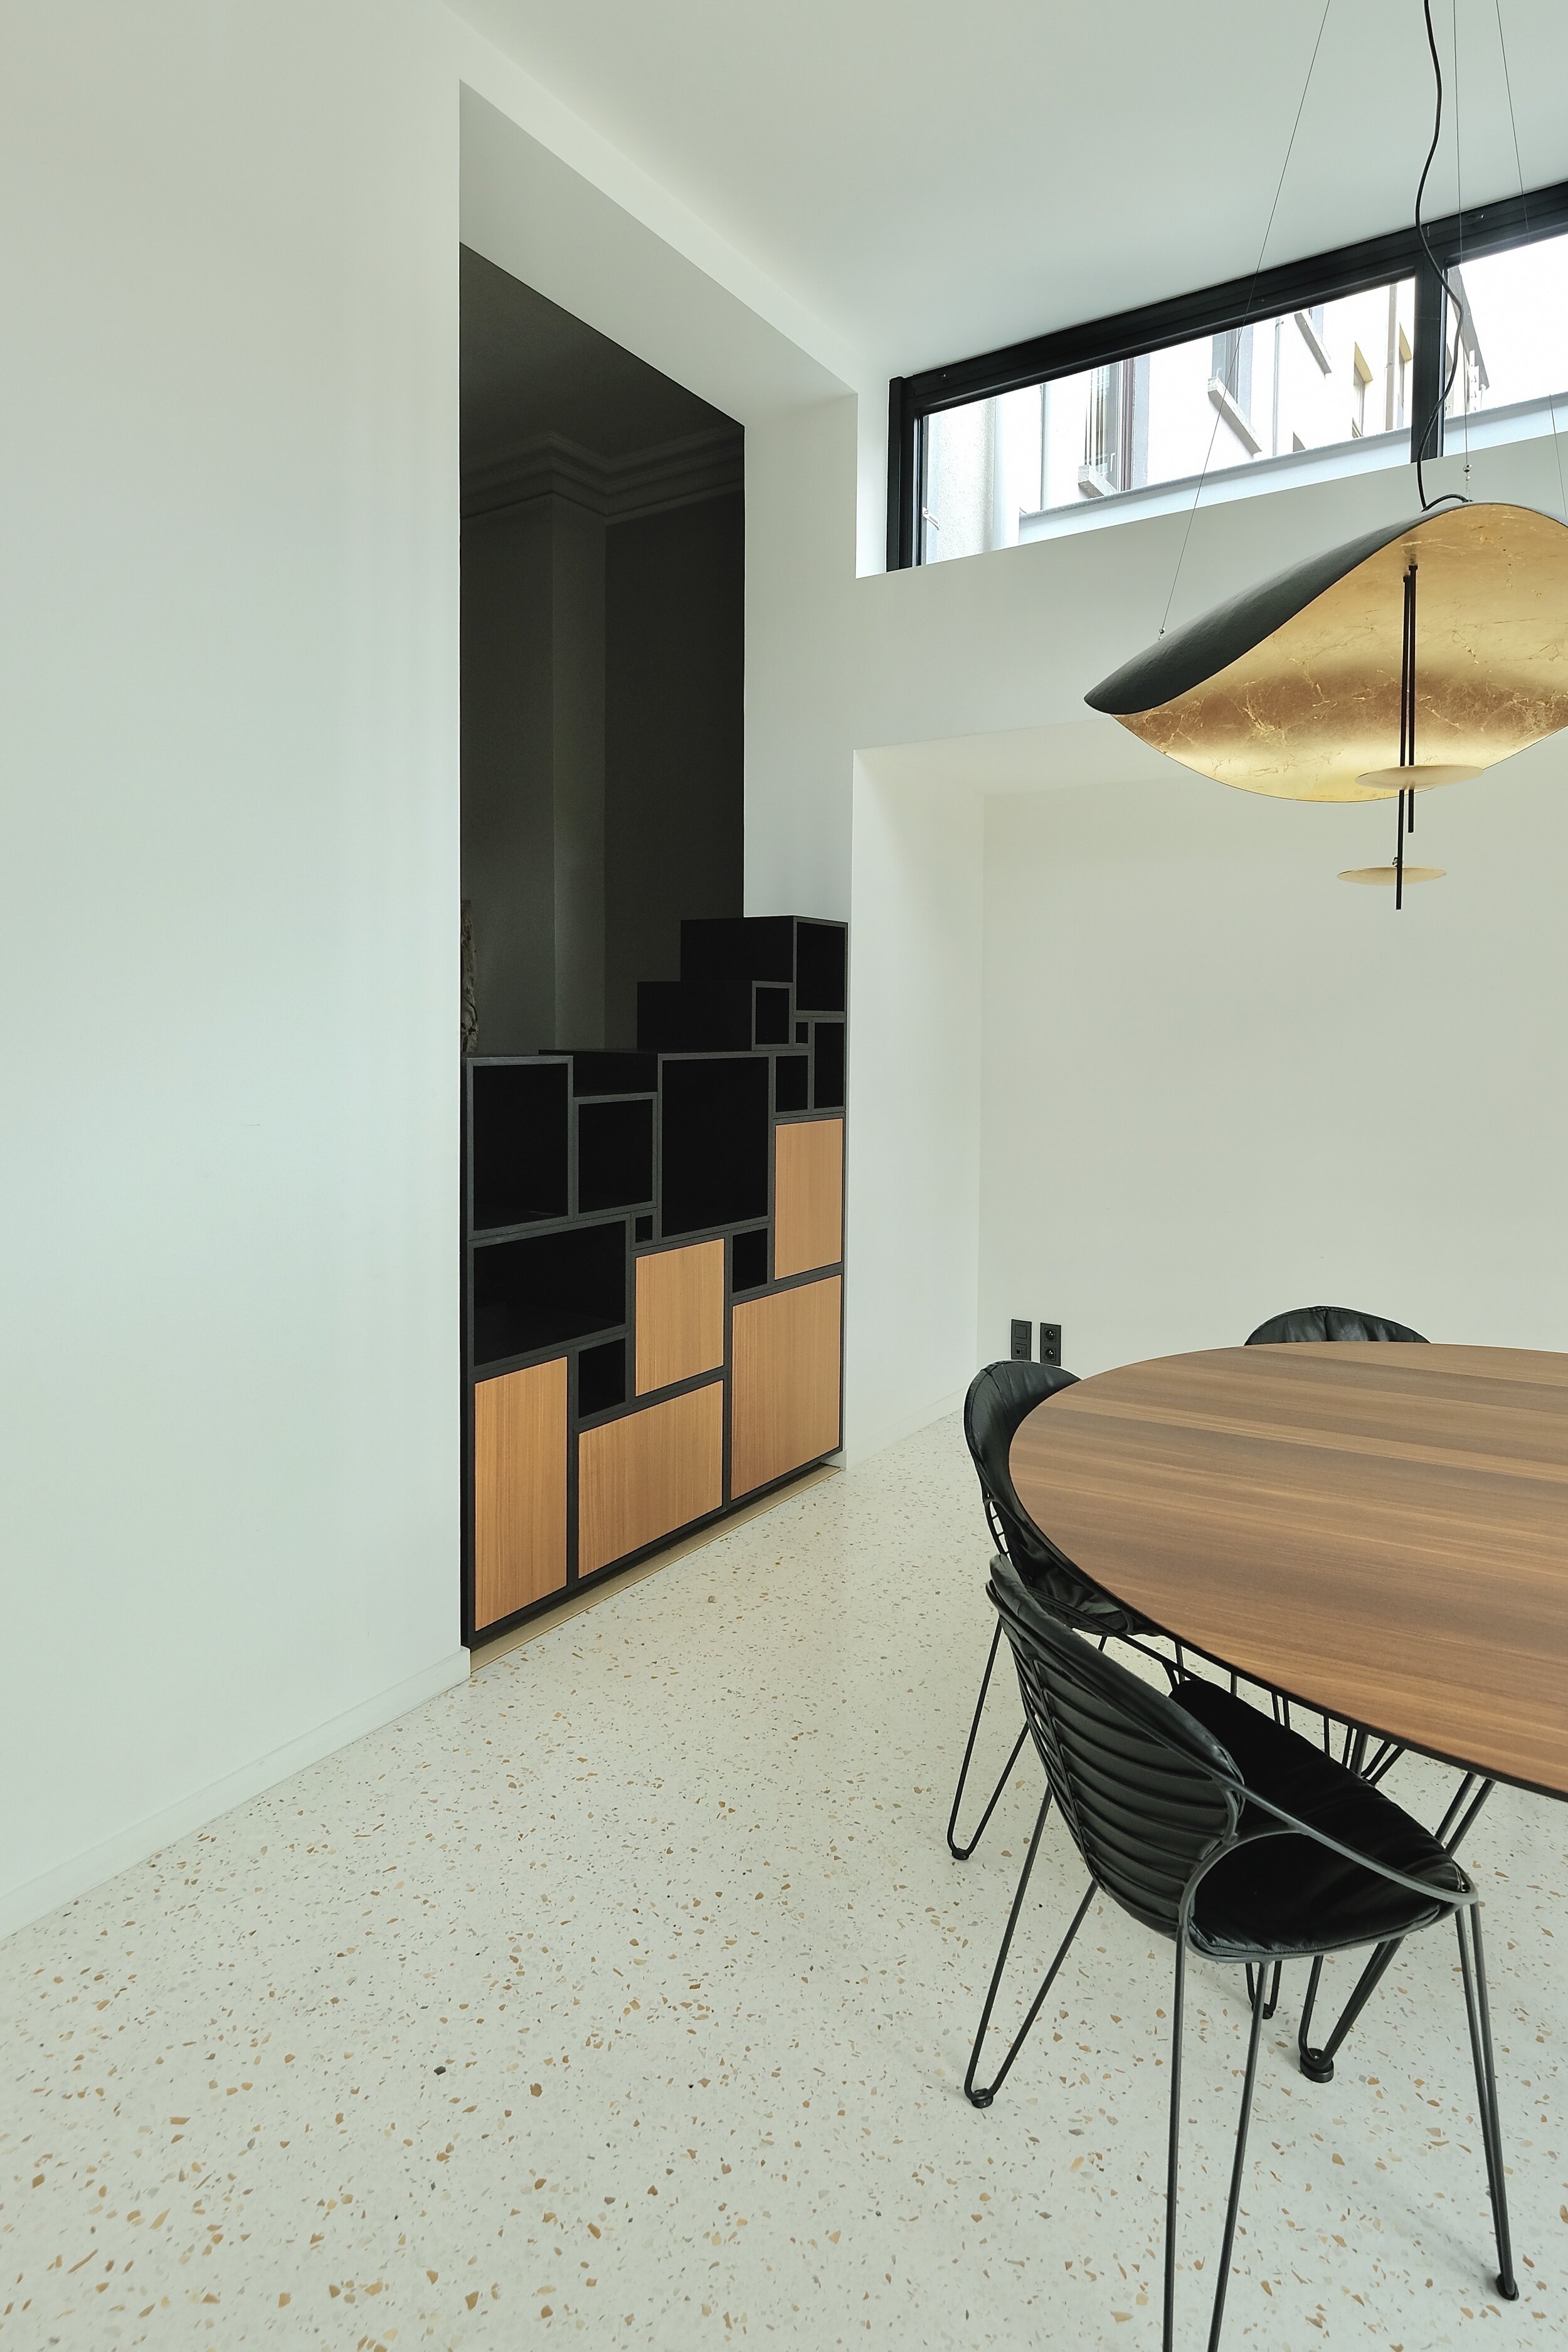 Gent Room divider cabinets 2019.jpeg